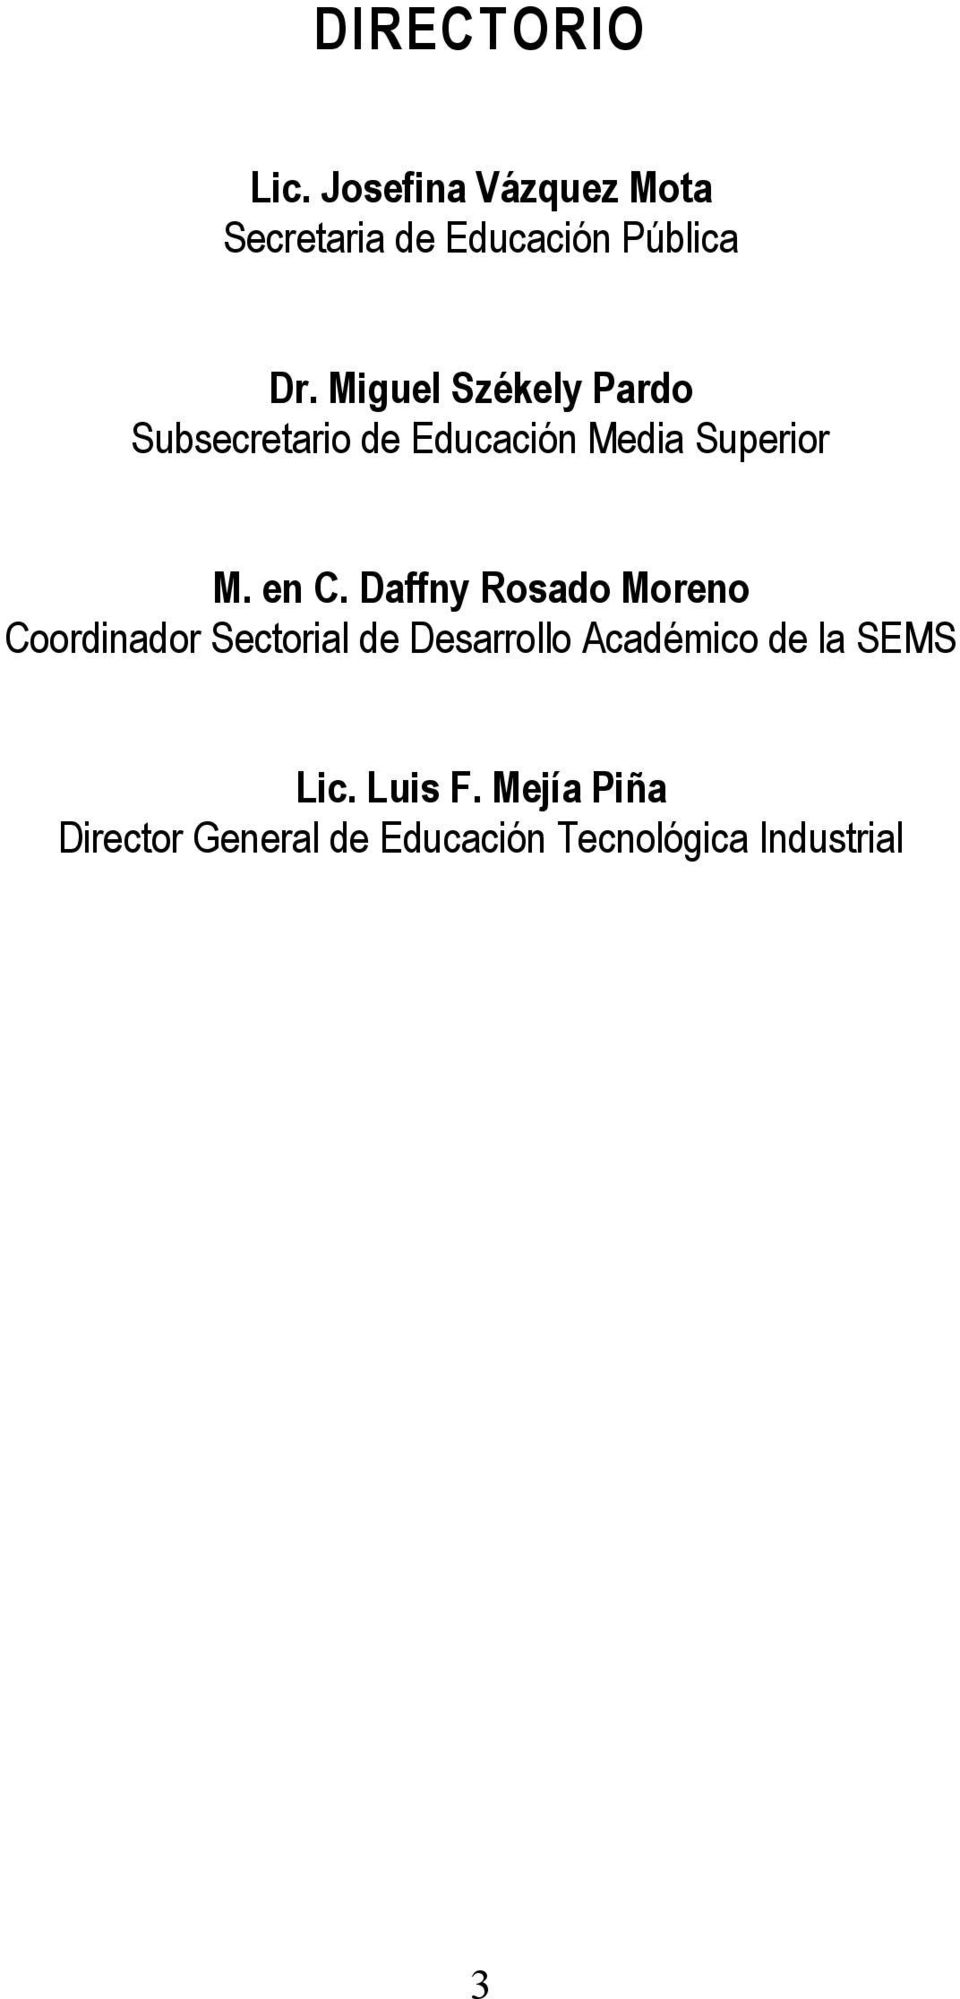 Daffny Rosado Moreno Coordinador Sectorial de Desarrollo Académico de la